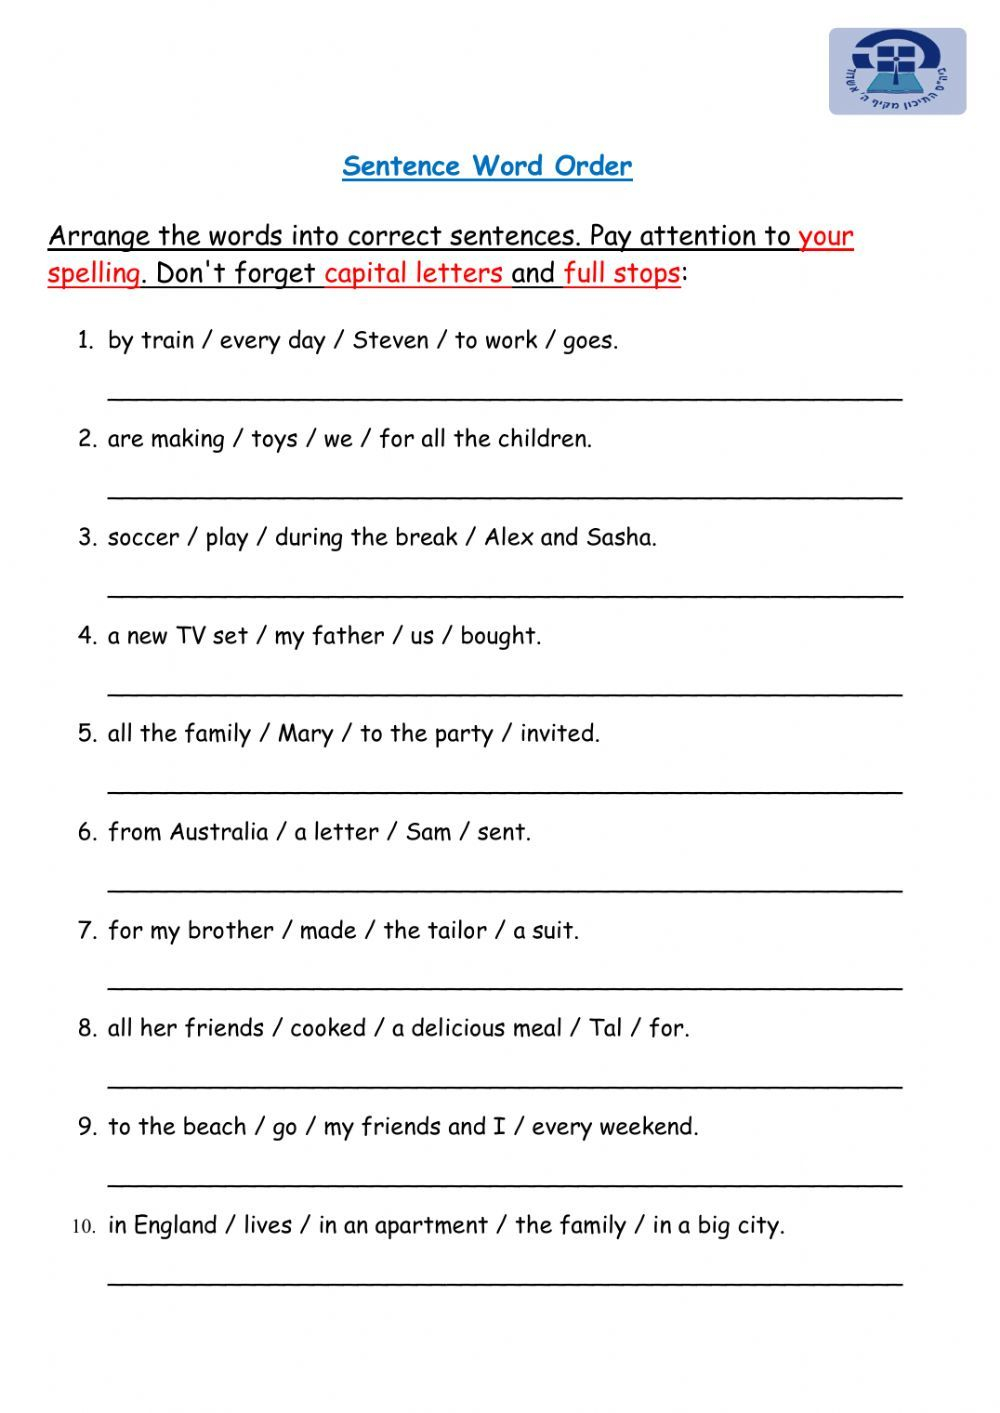 Sentence Word Order Practice Worksheet In 2021 Word Order Sentence